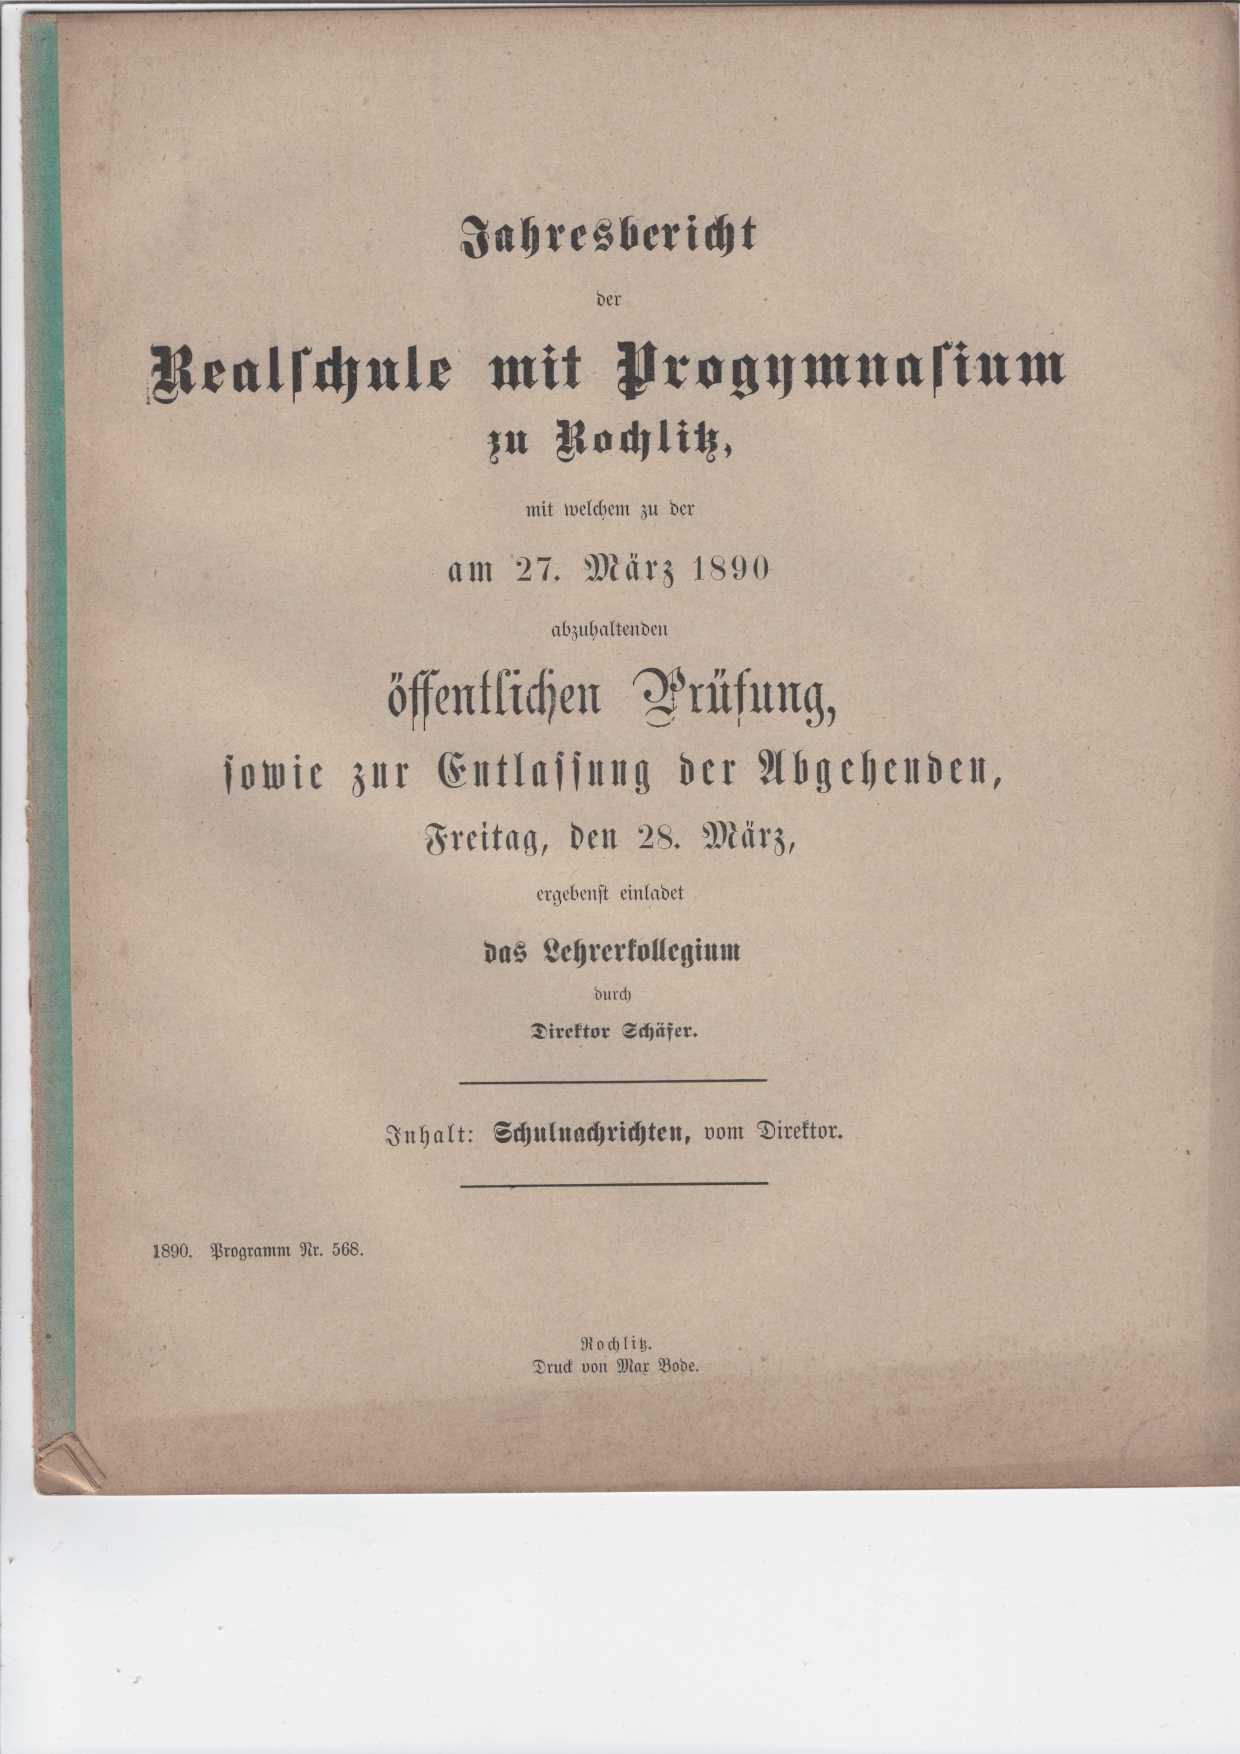   Jahresbericht der Realschule mit Progymnasium zu Rochlitz, mit welchem zu der am 27. Mrz 1890 abzuhaltenden ffentlichen Prfung, 